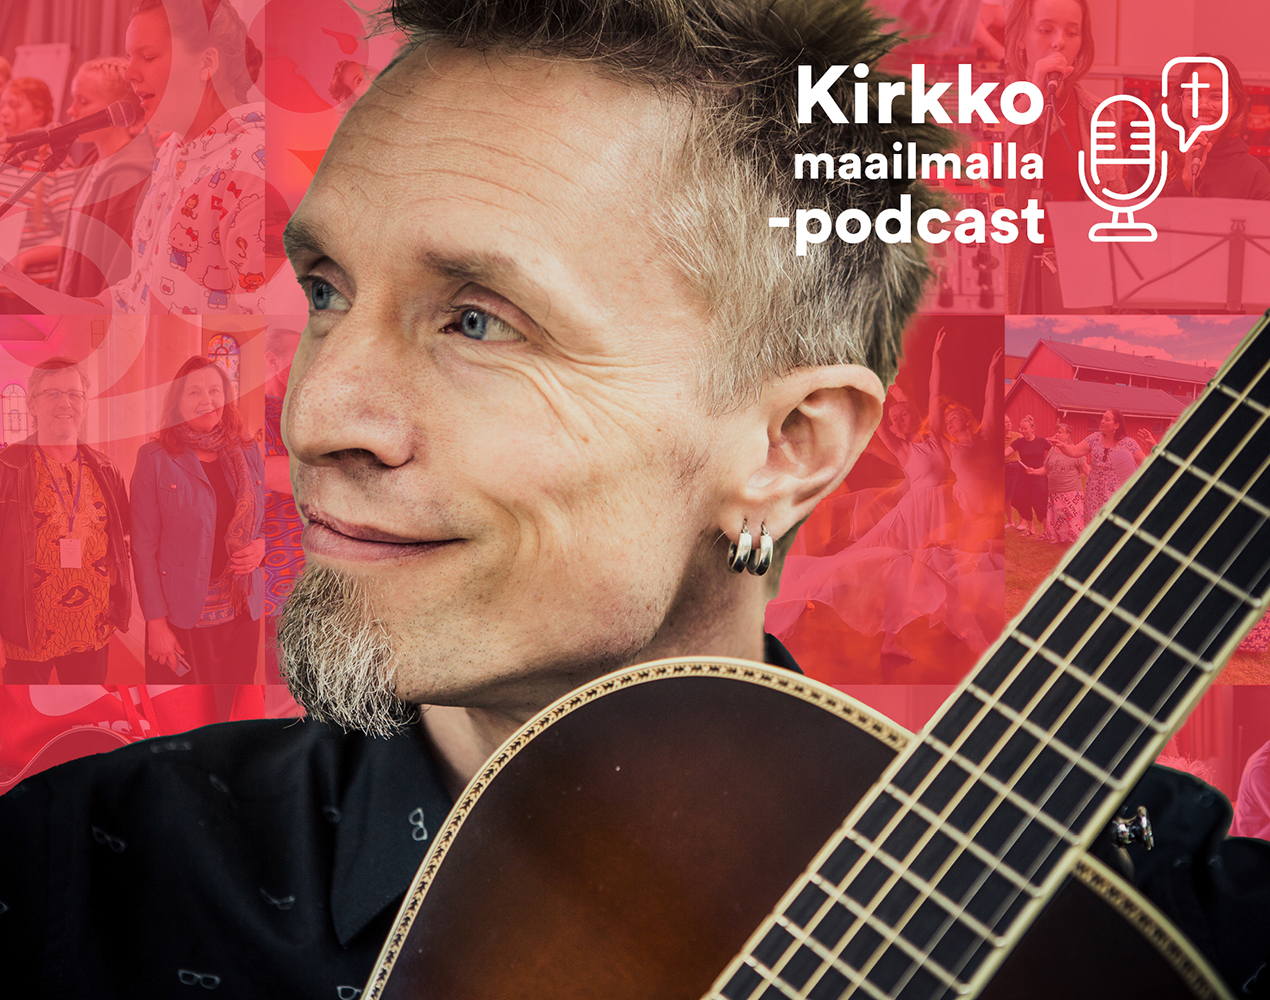 Kirkko maailmalla -podcastissa haastateltavana Make Perttilä.